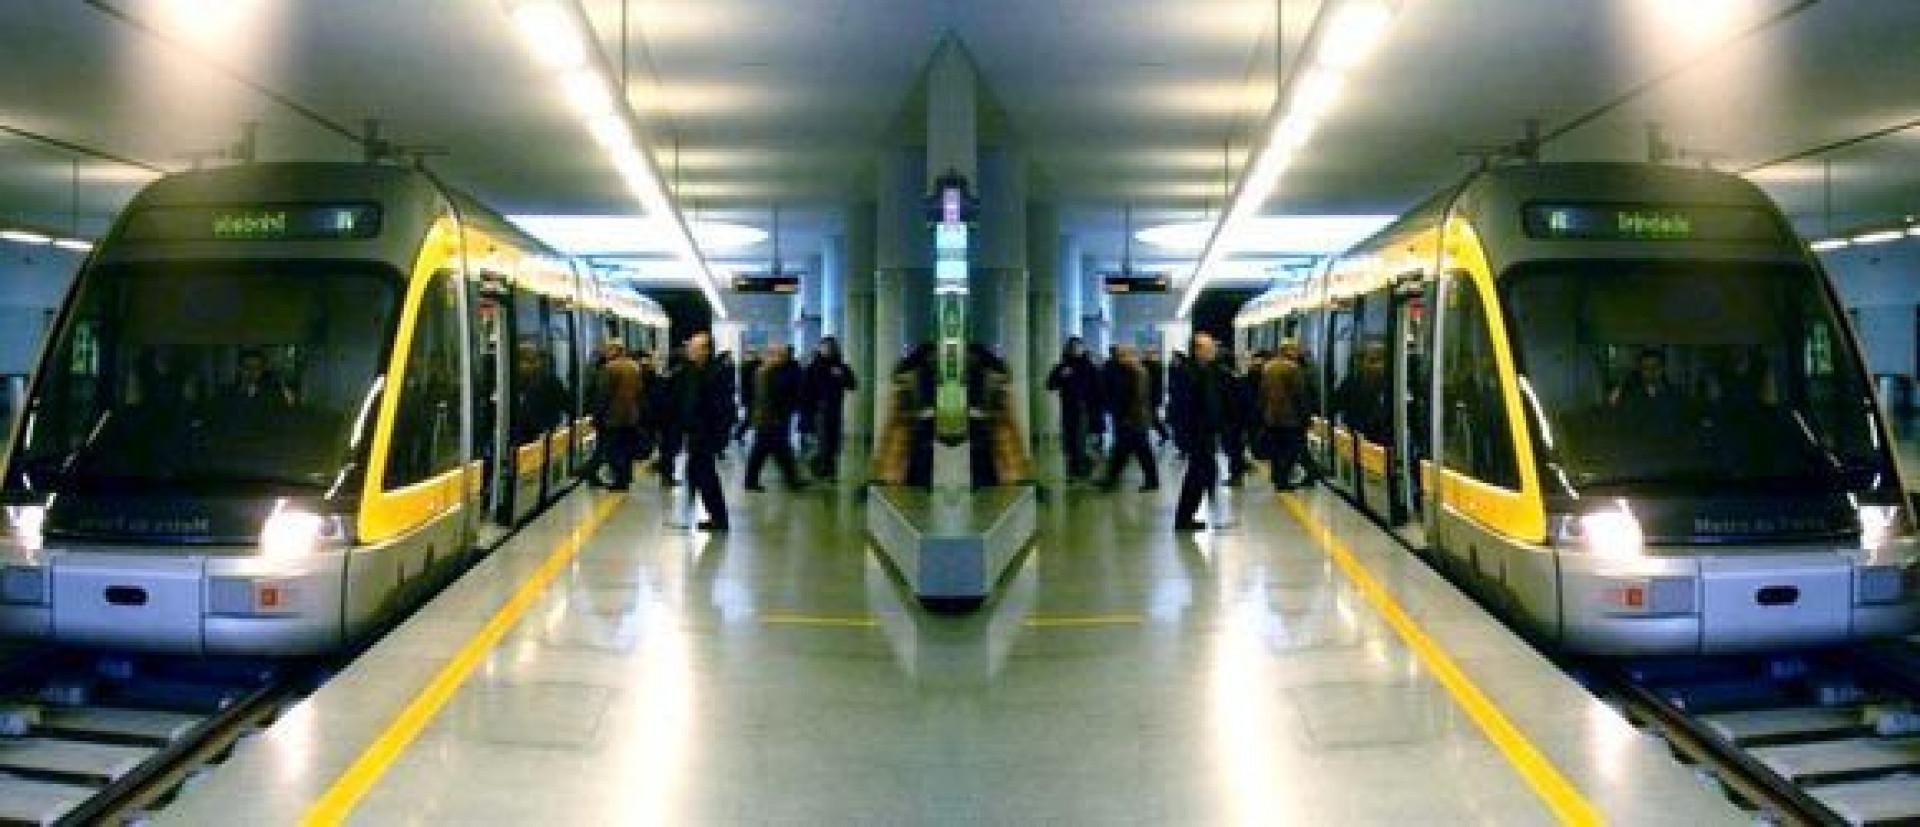 foto espelhada de uma estação de trem, com pessoas embarcando